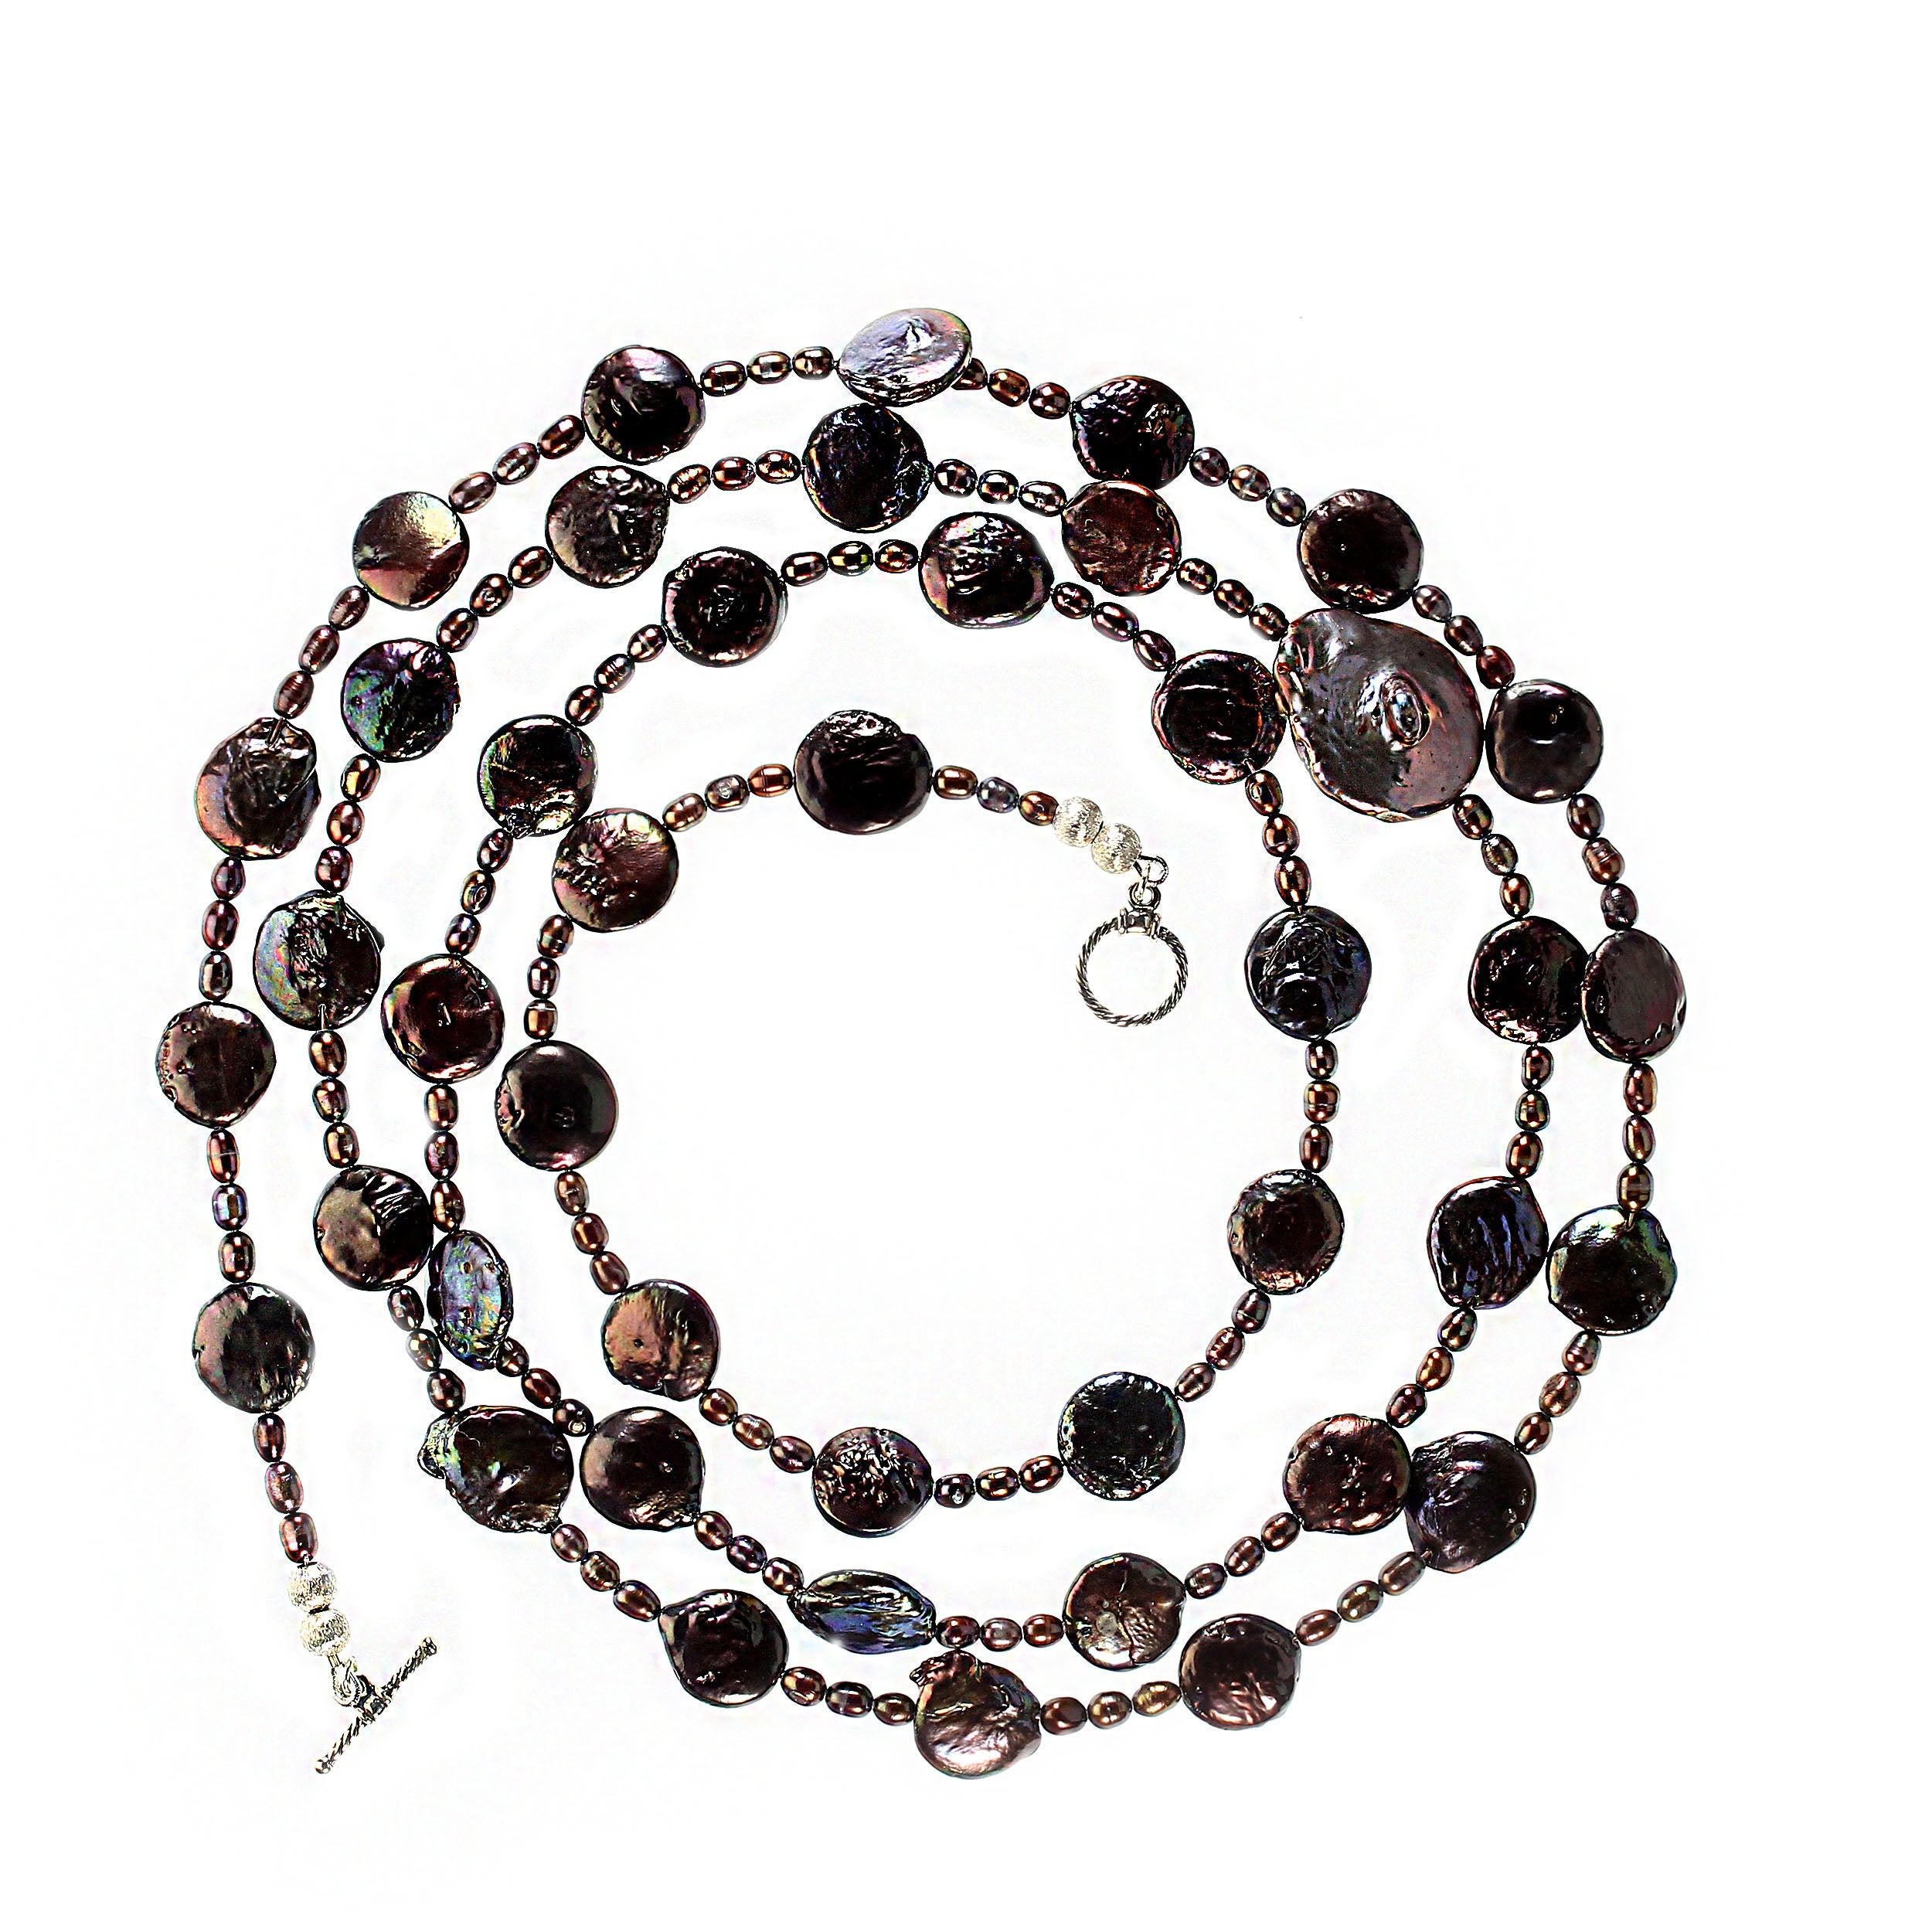 Collier de perles unique de 49 pouces.  Ce collier de perles comprend des perles de 12 mm et des perles de rocaille de 5 x 3 mm dans cette belle couleur mauve/vin.  La longueur de 49 pouces vous permet d'expérimenter une variété de styles, de styles